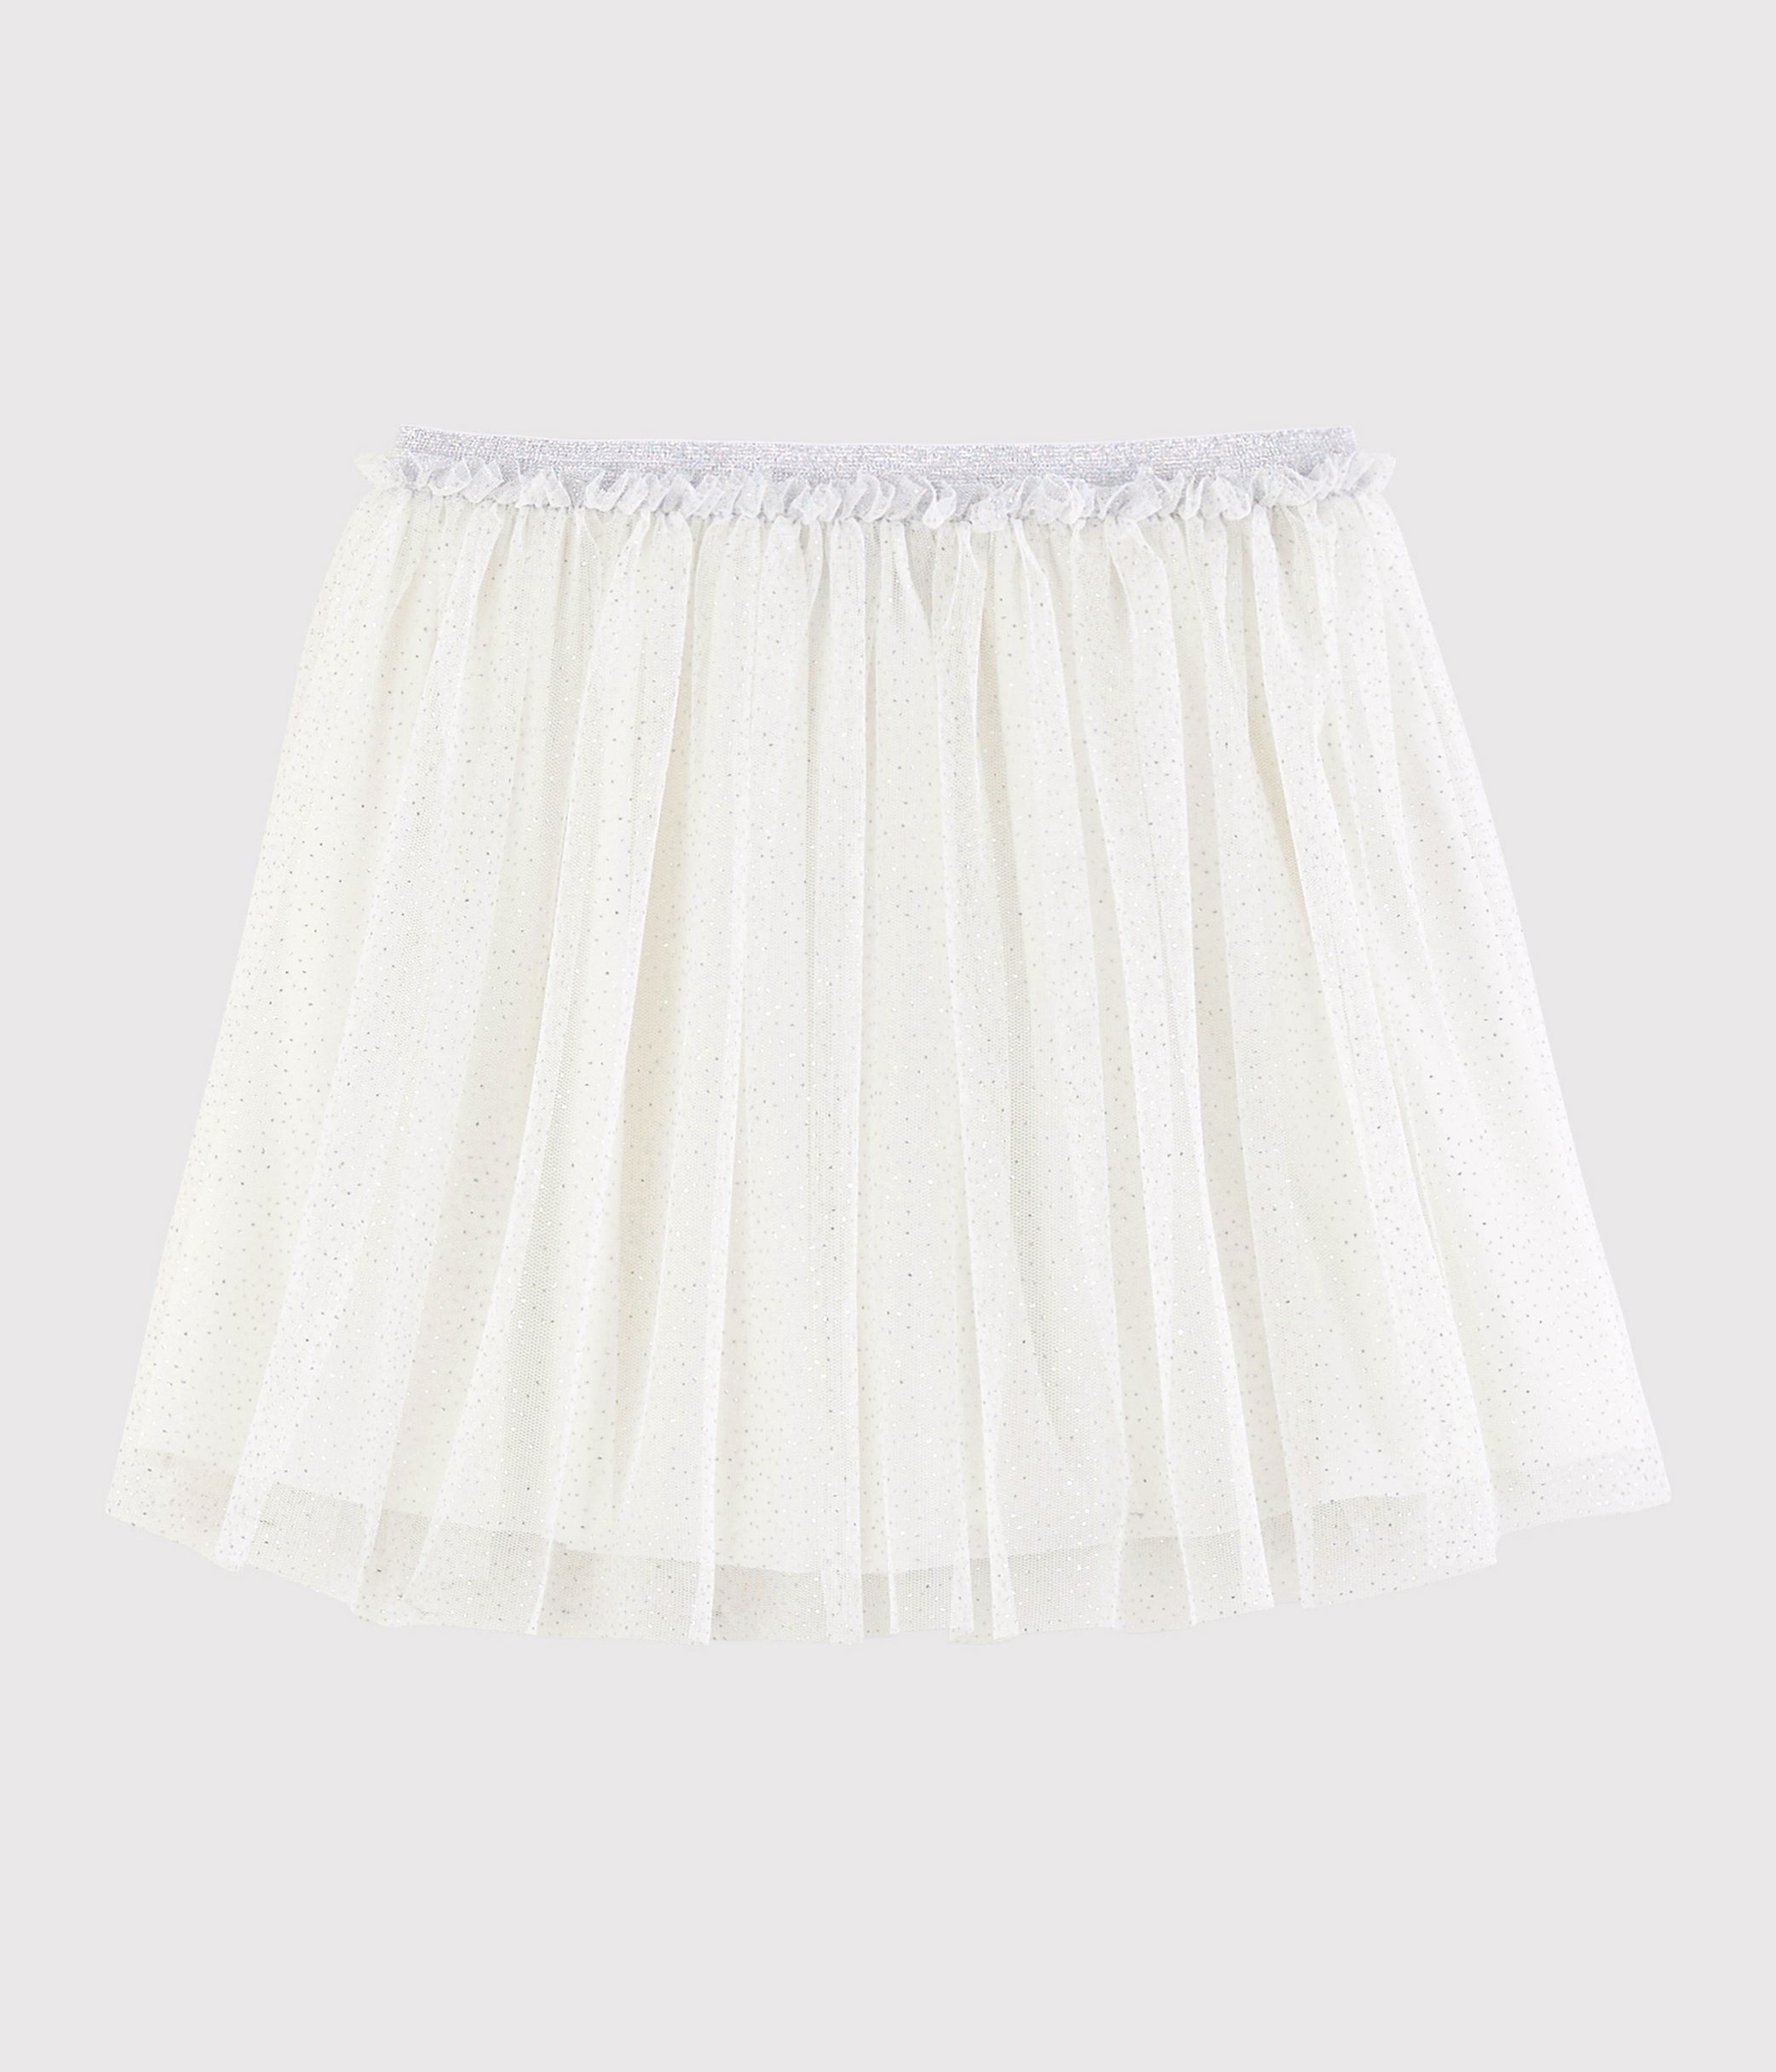 Girls White Glitter Tulle Skirt